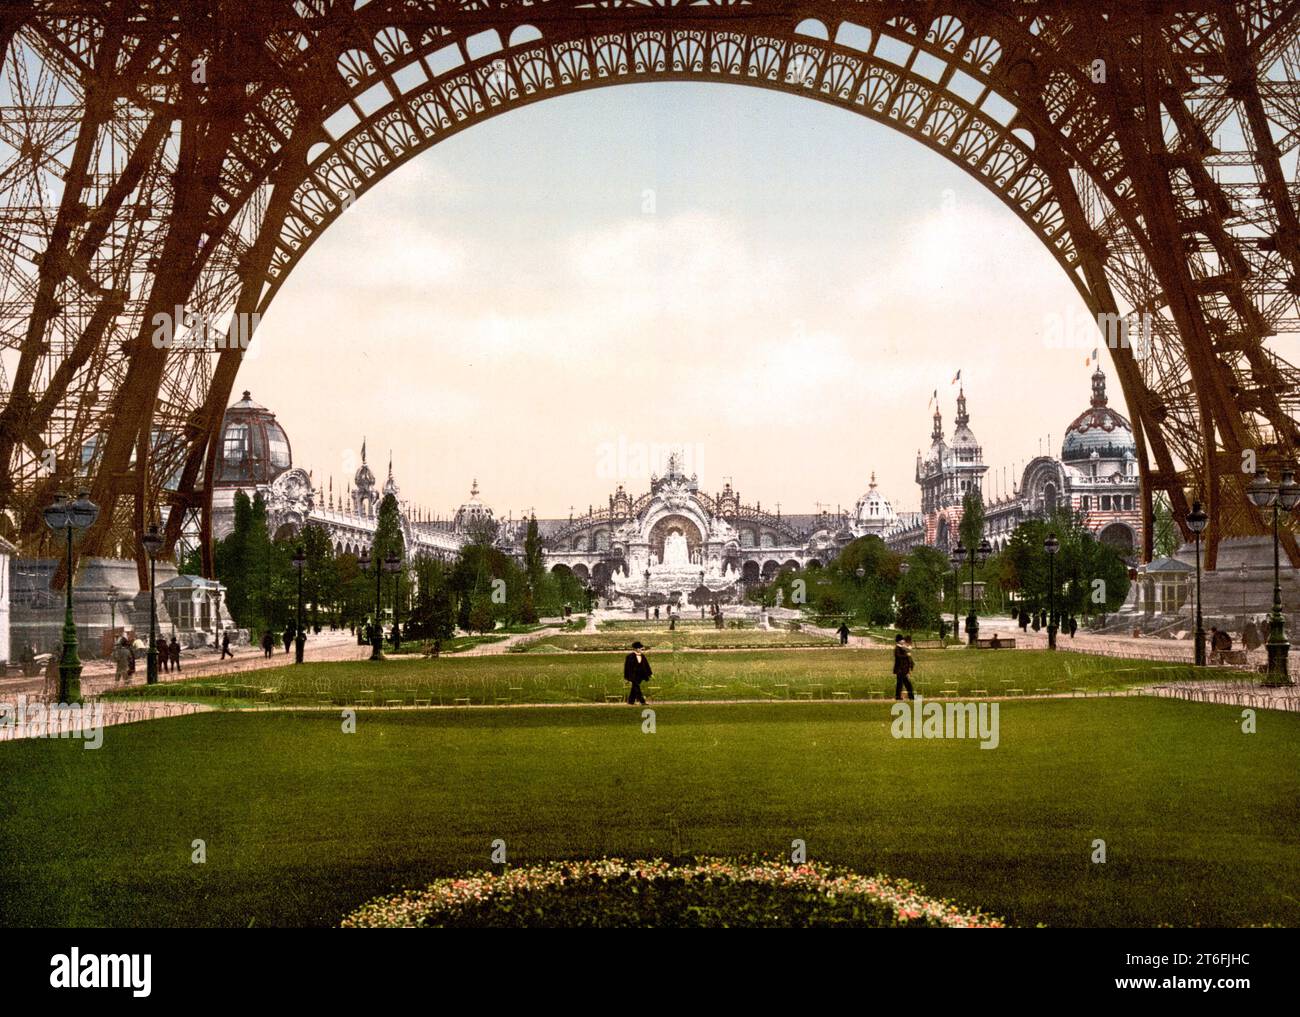 Das Marsfeld, Champ de Mars, eine ursprünglich zu militärischen, später mehrfach zu Ausstellungszwecken genutzte Großgrünfläche, Paris, Frankreich, Historisch, um 1900, digital restaurierte Reproduktion von einer Vorlage aus dem 19. Jahrhundert Stock Photo